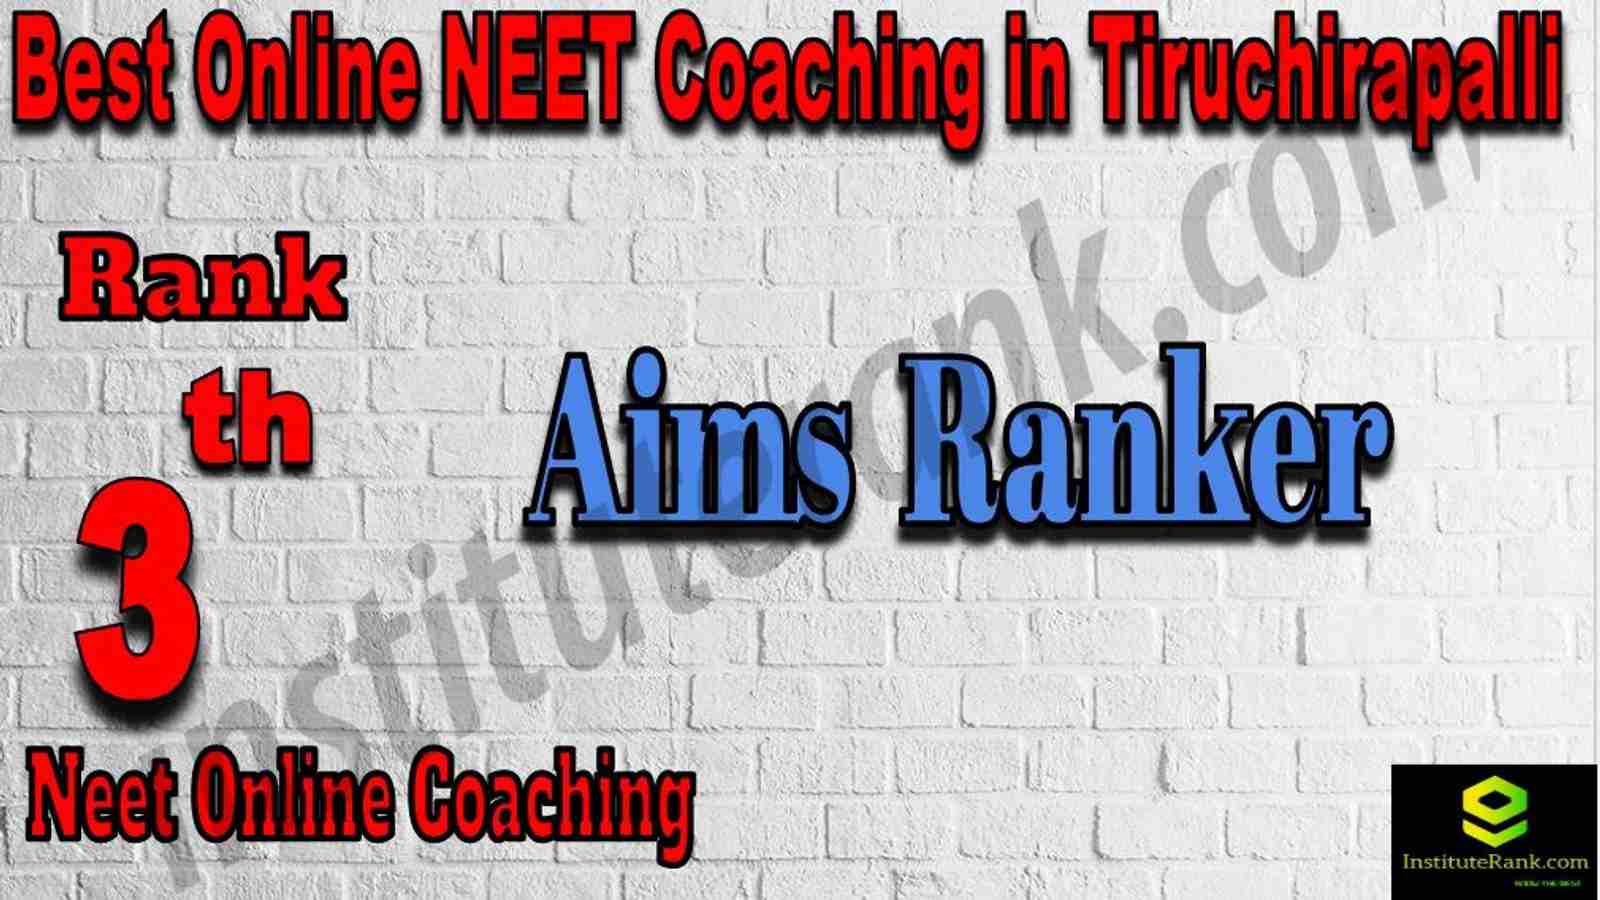 3rd Best Online Neet Coaching in Tiruchirapalli